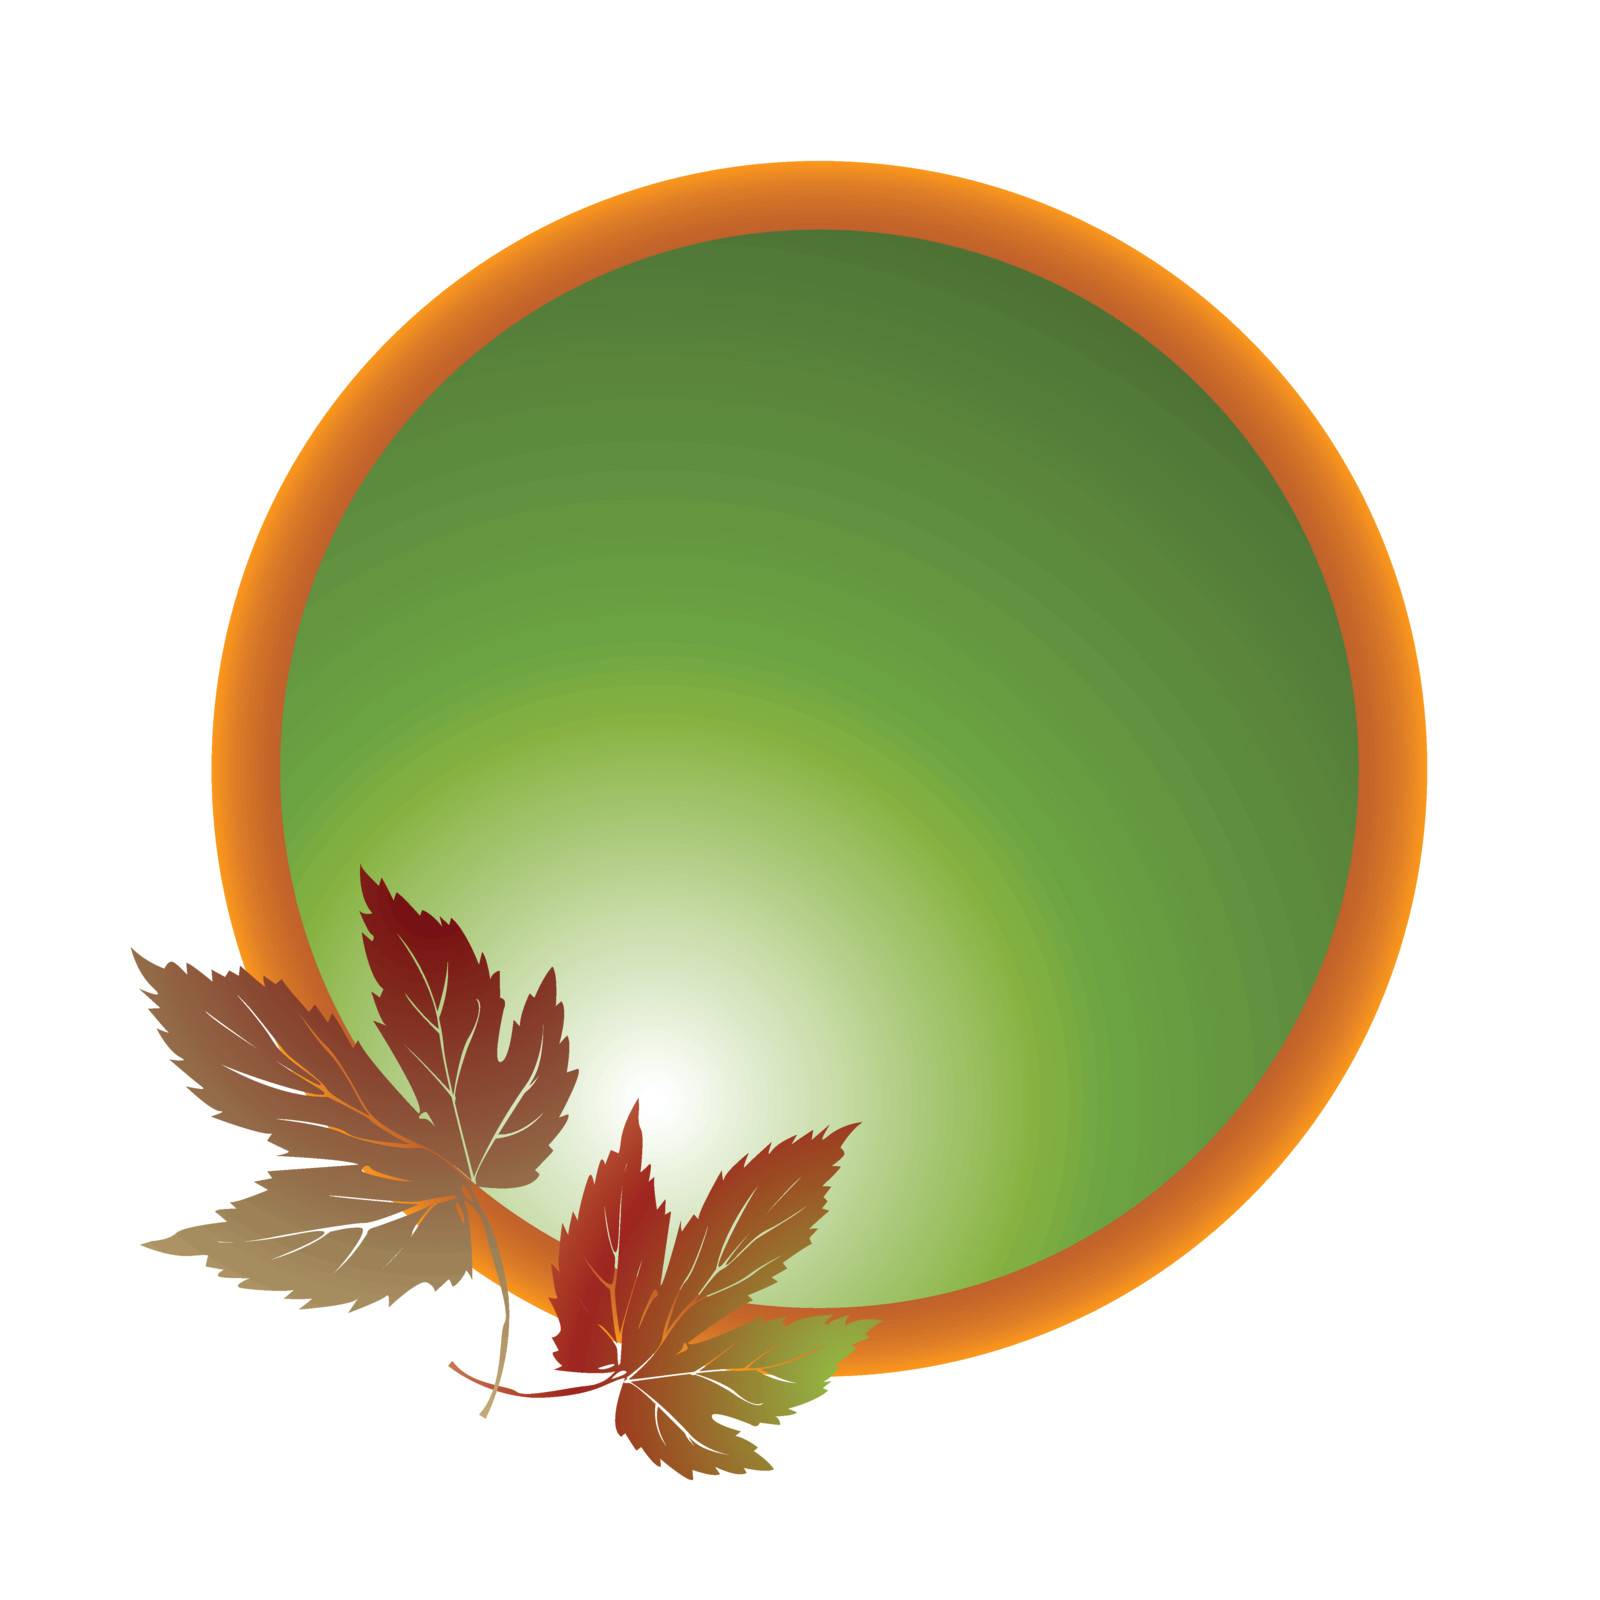 Dry leaves emblem